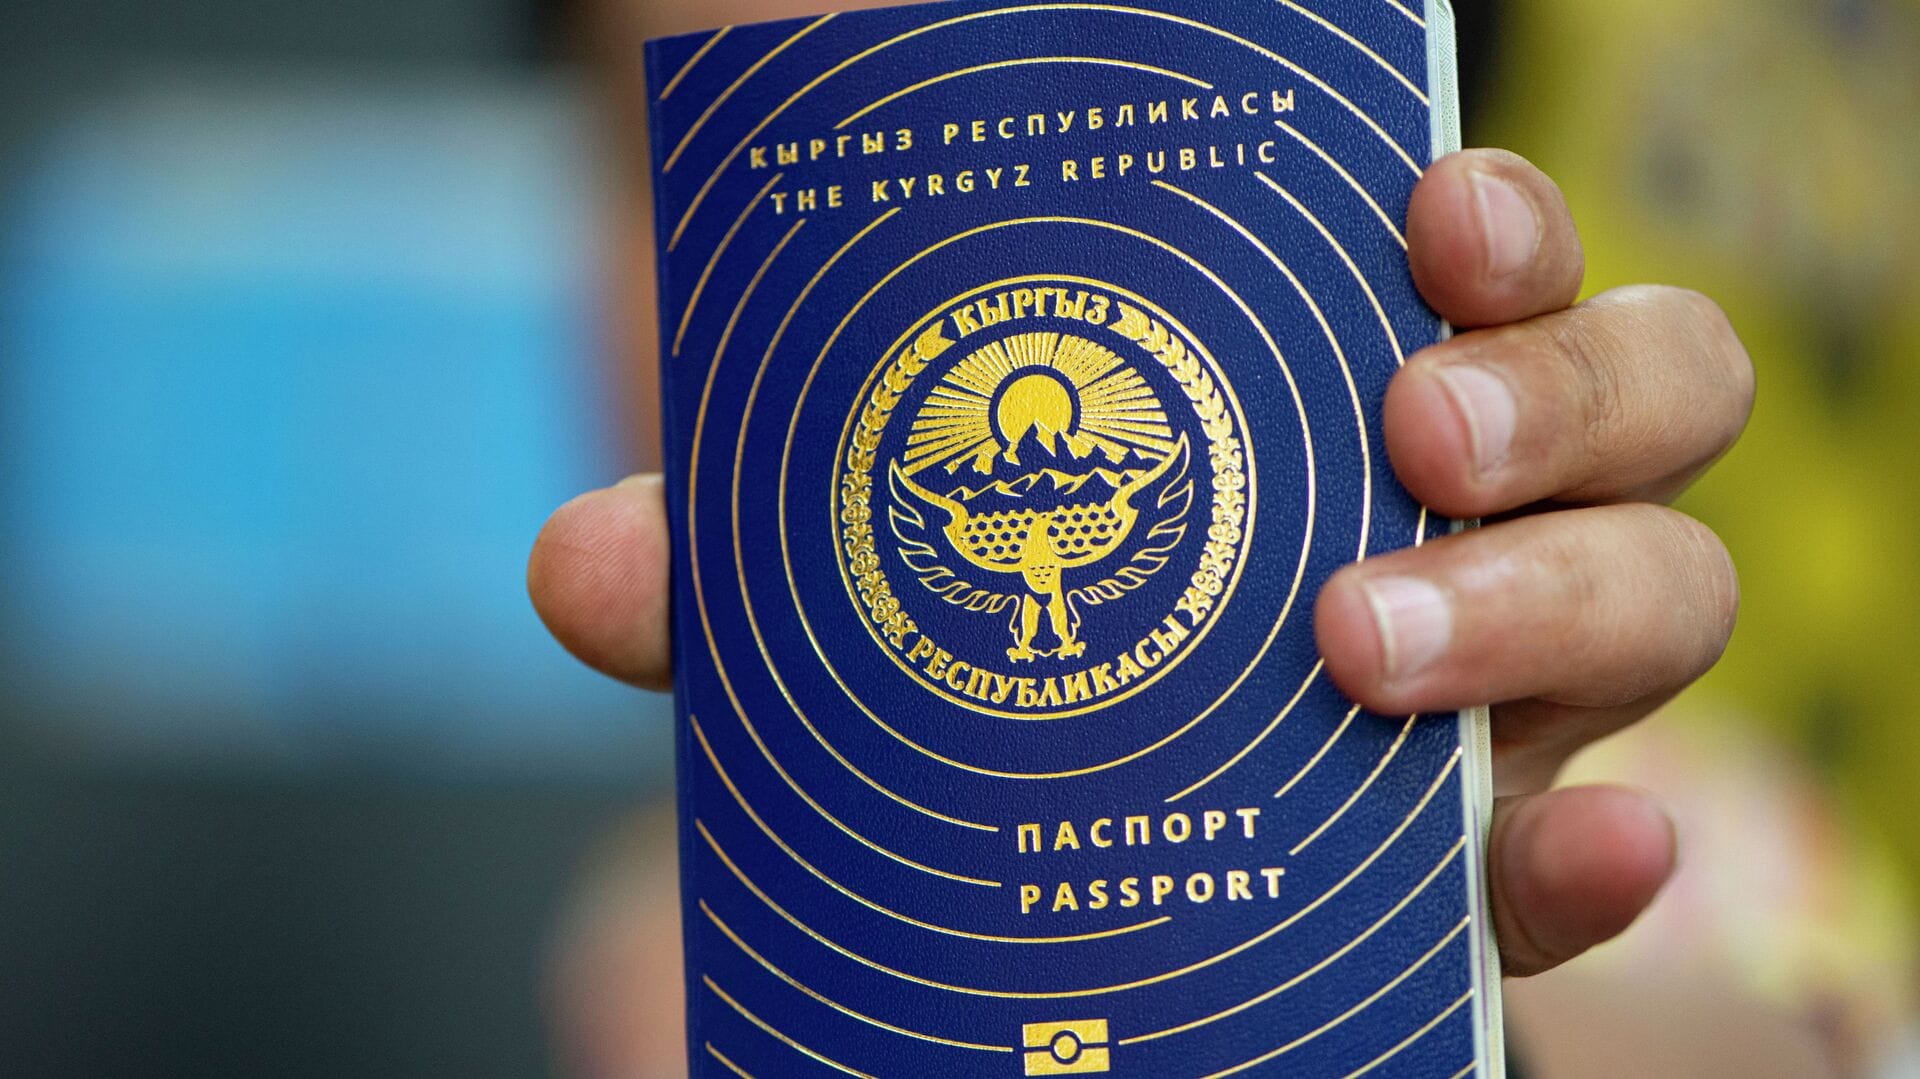 Кыргызстан уступил Узбекистану и Казахстану в рейтинге "сильных" паспортов